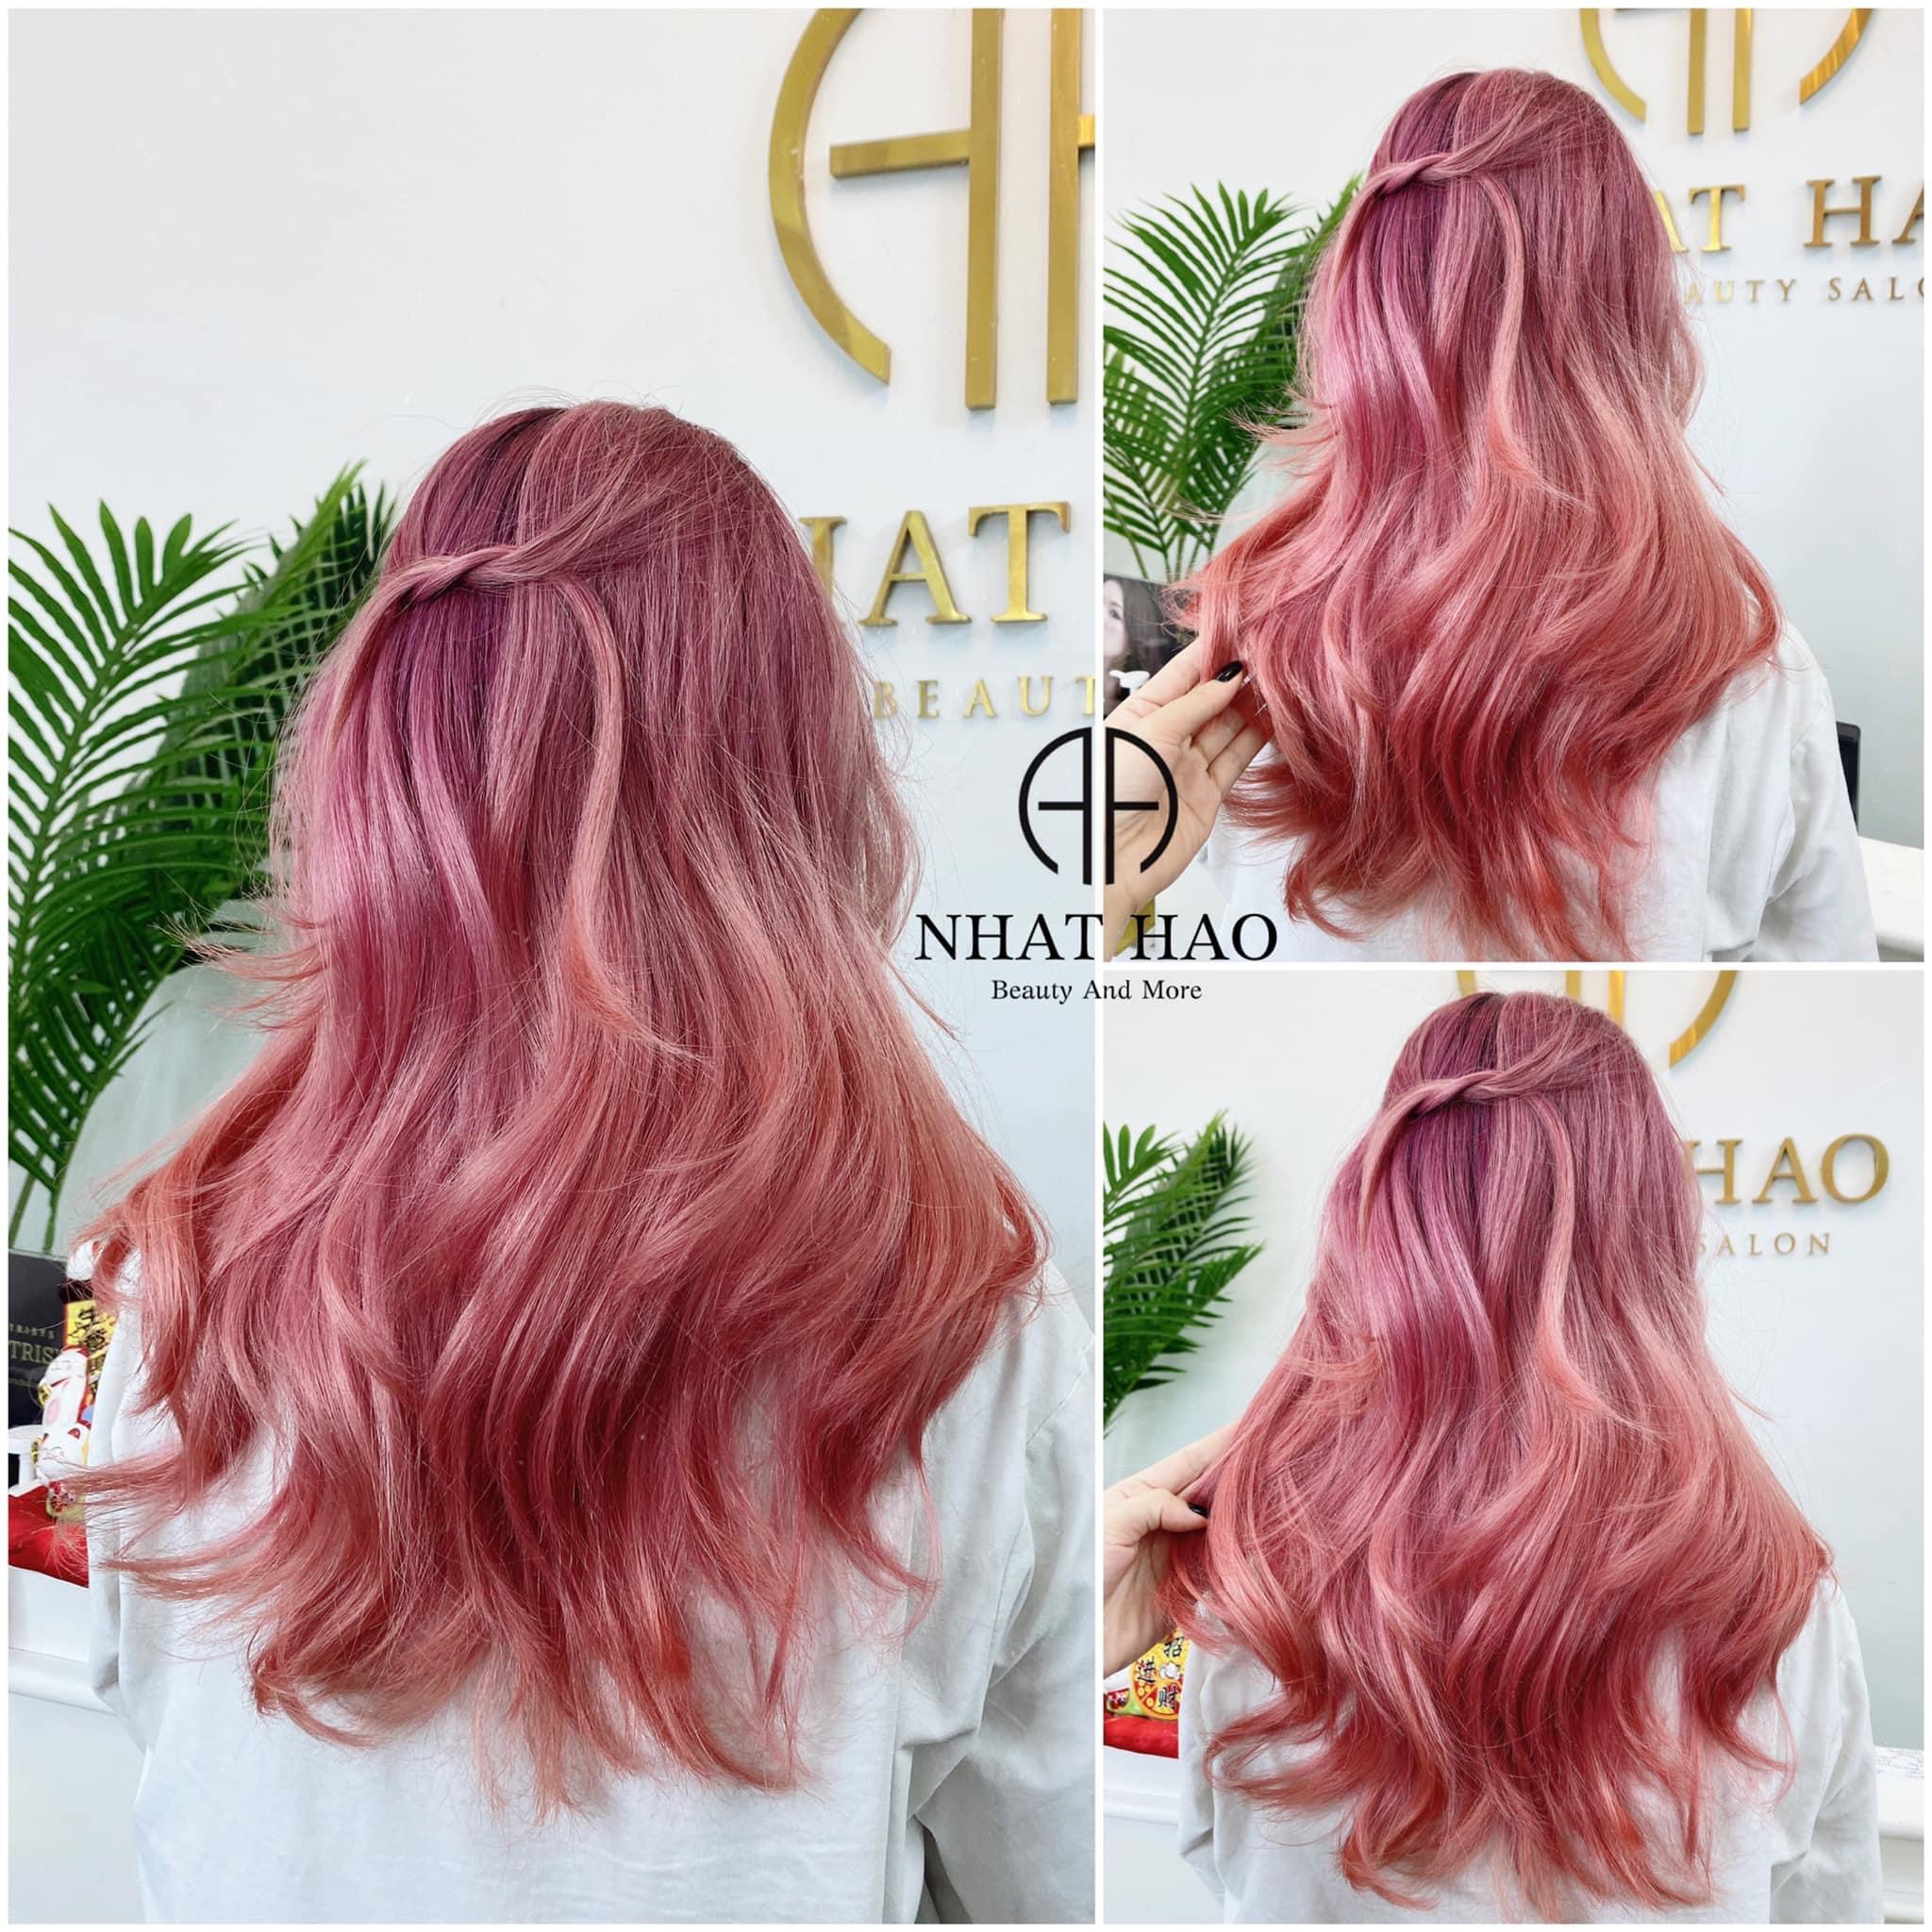 Nhuộm tóc màu tím hồng sẽ khiến bạn trông rực rỡ và đầy sức sống. Hãy xem hình ảnh này và chứng kiến sự kỳ diệu khi bạn tự nhuộm tóc màu tím hồng.